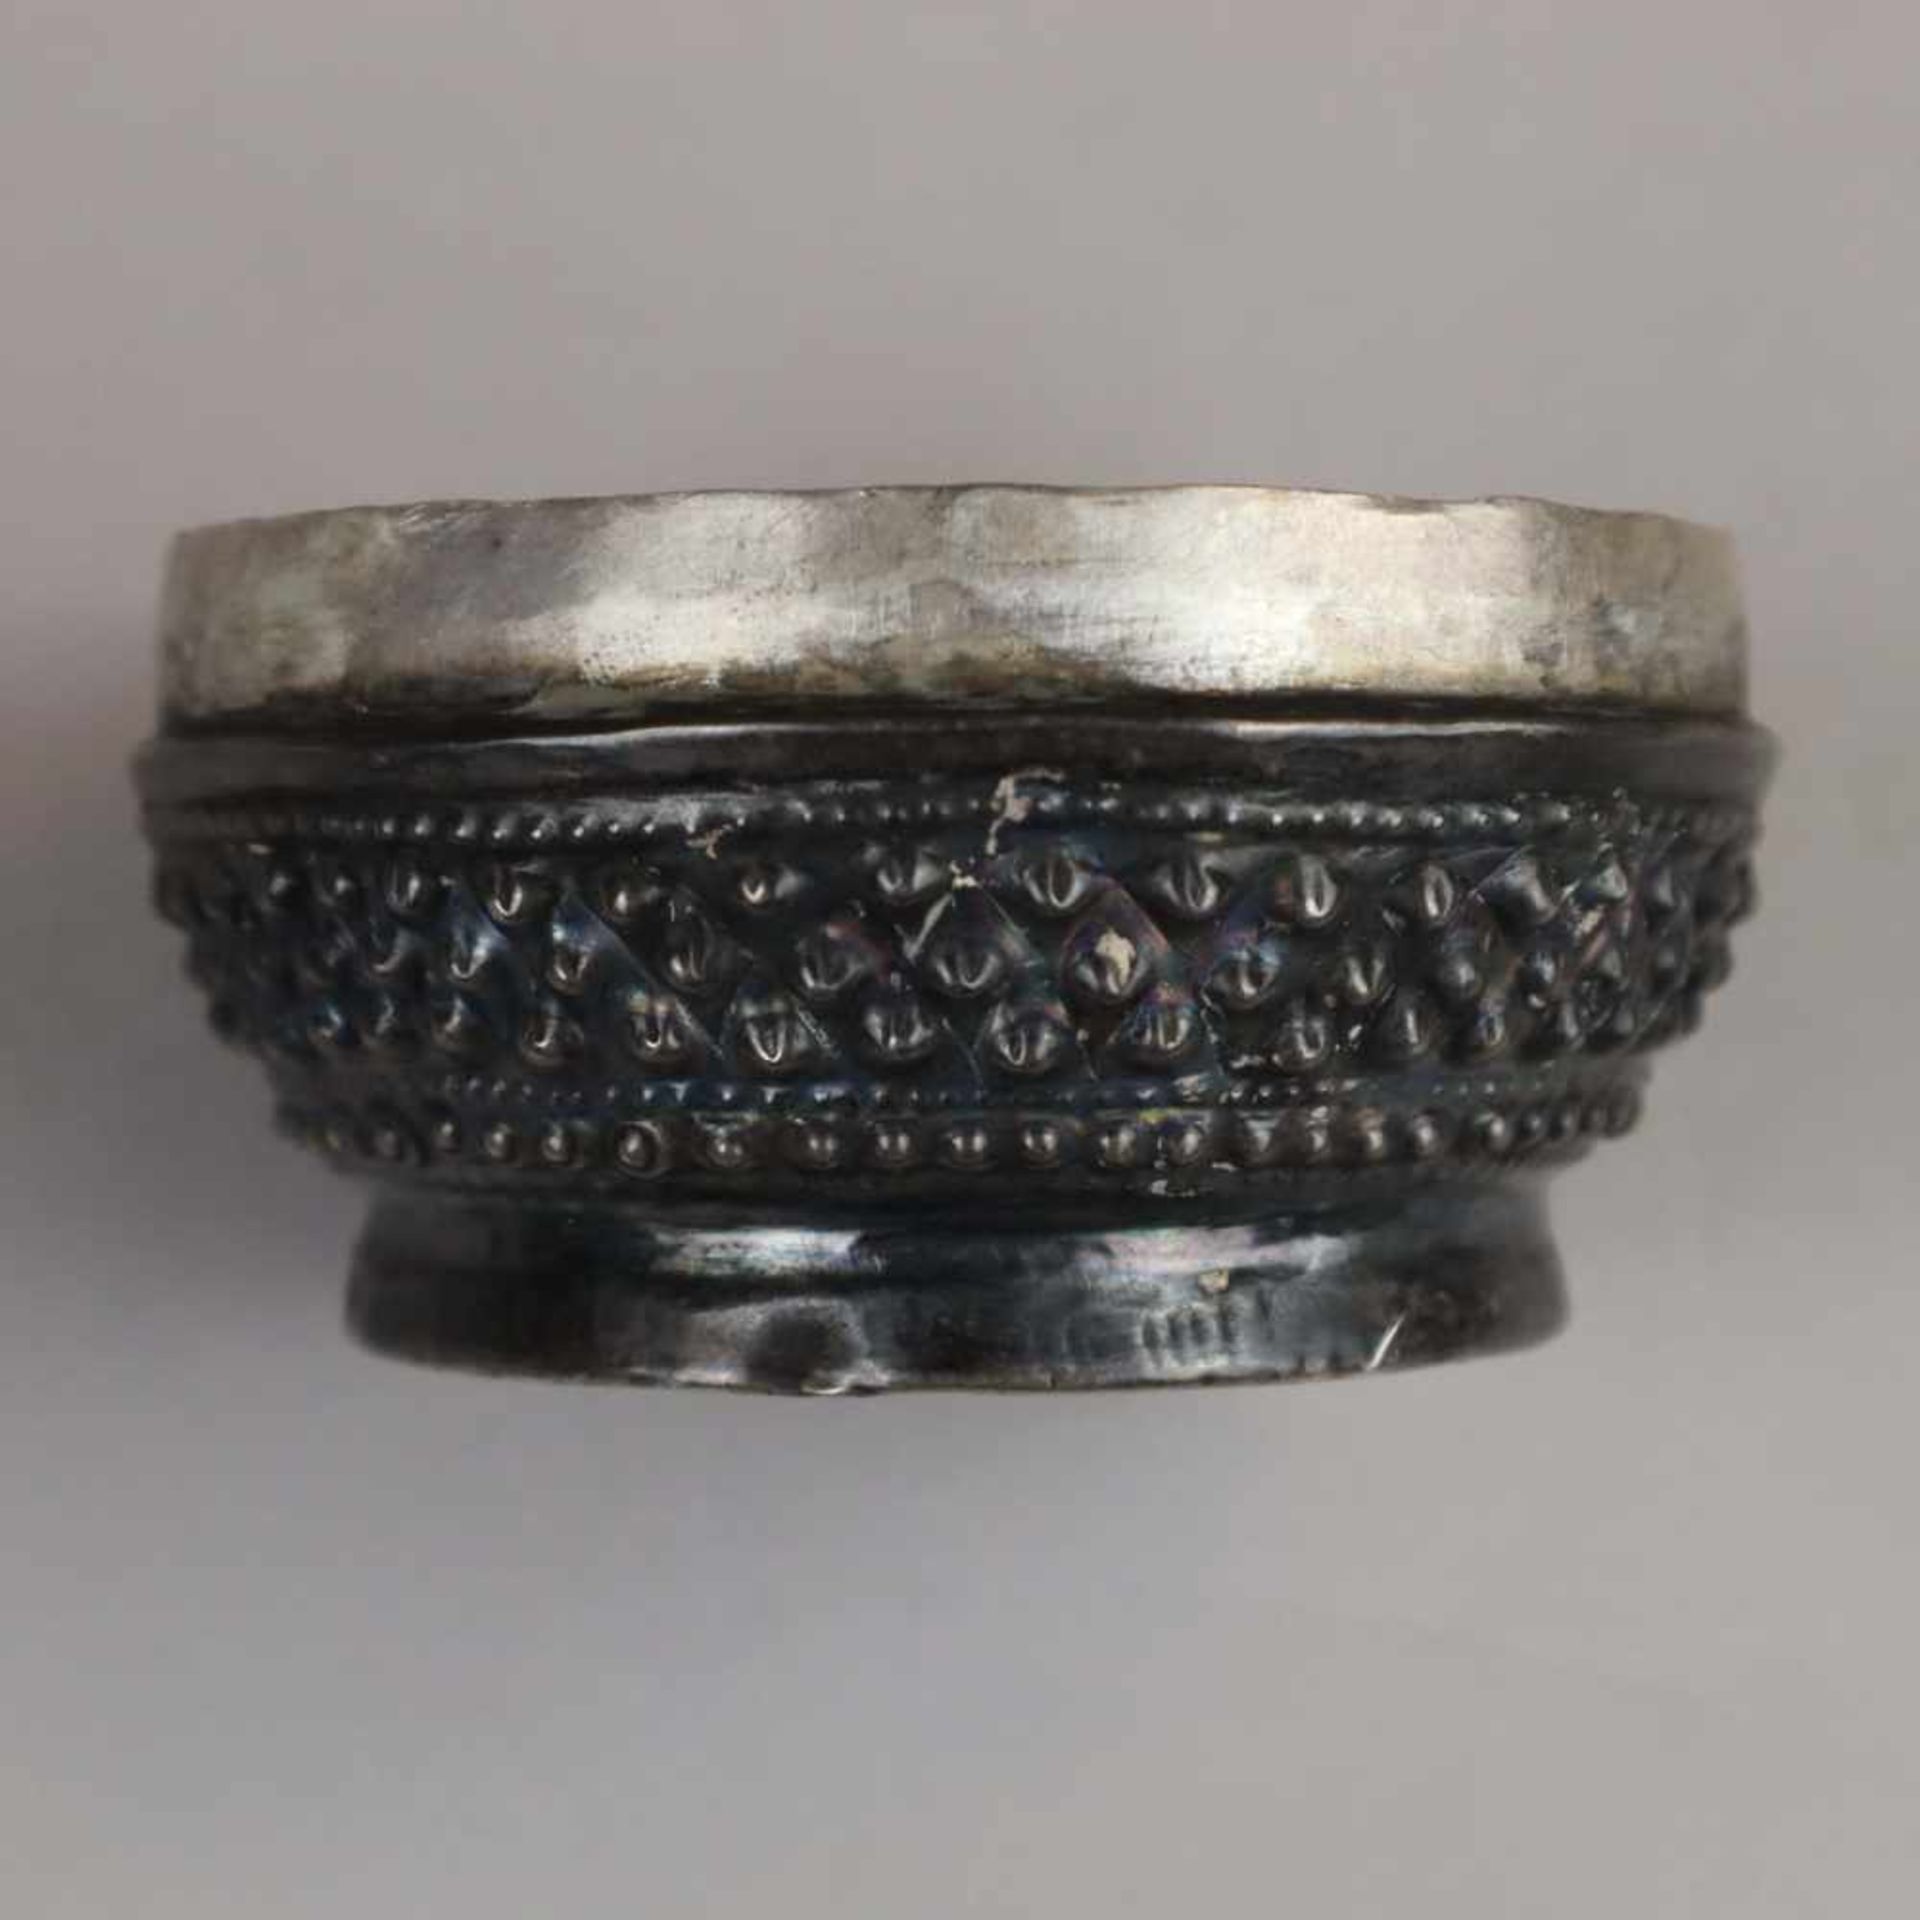 Orientalische Silberdose - auf rundem Standring, Korpus und Stülpdeckel mit reichem Reliefdekor, - Bild 4 aus 5